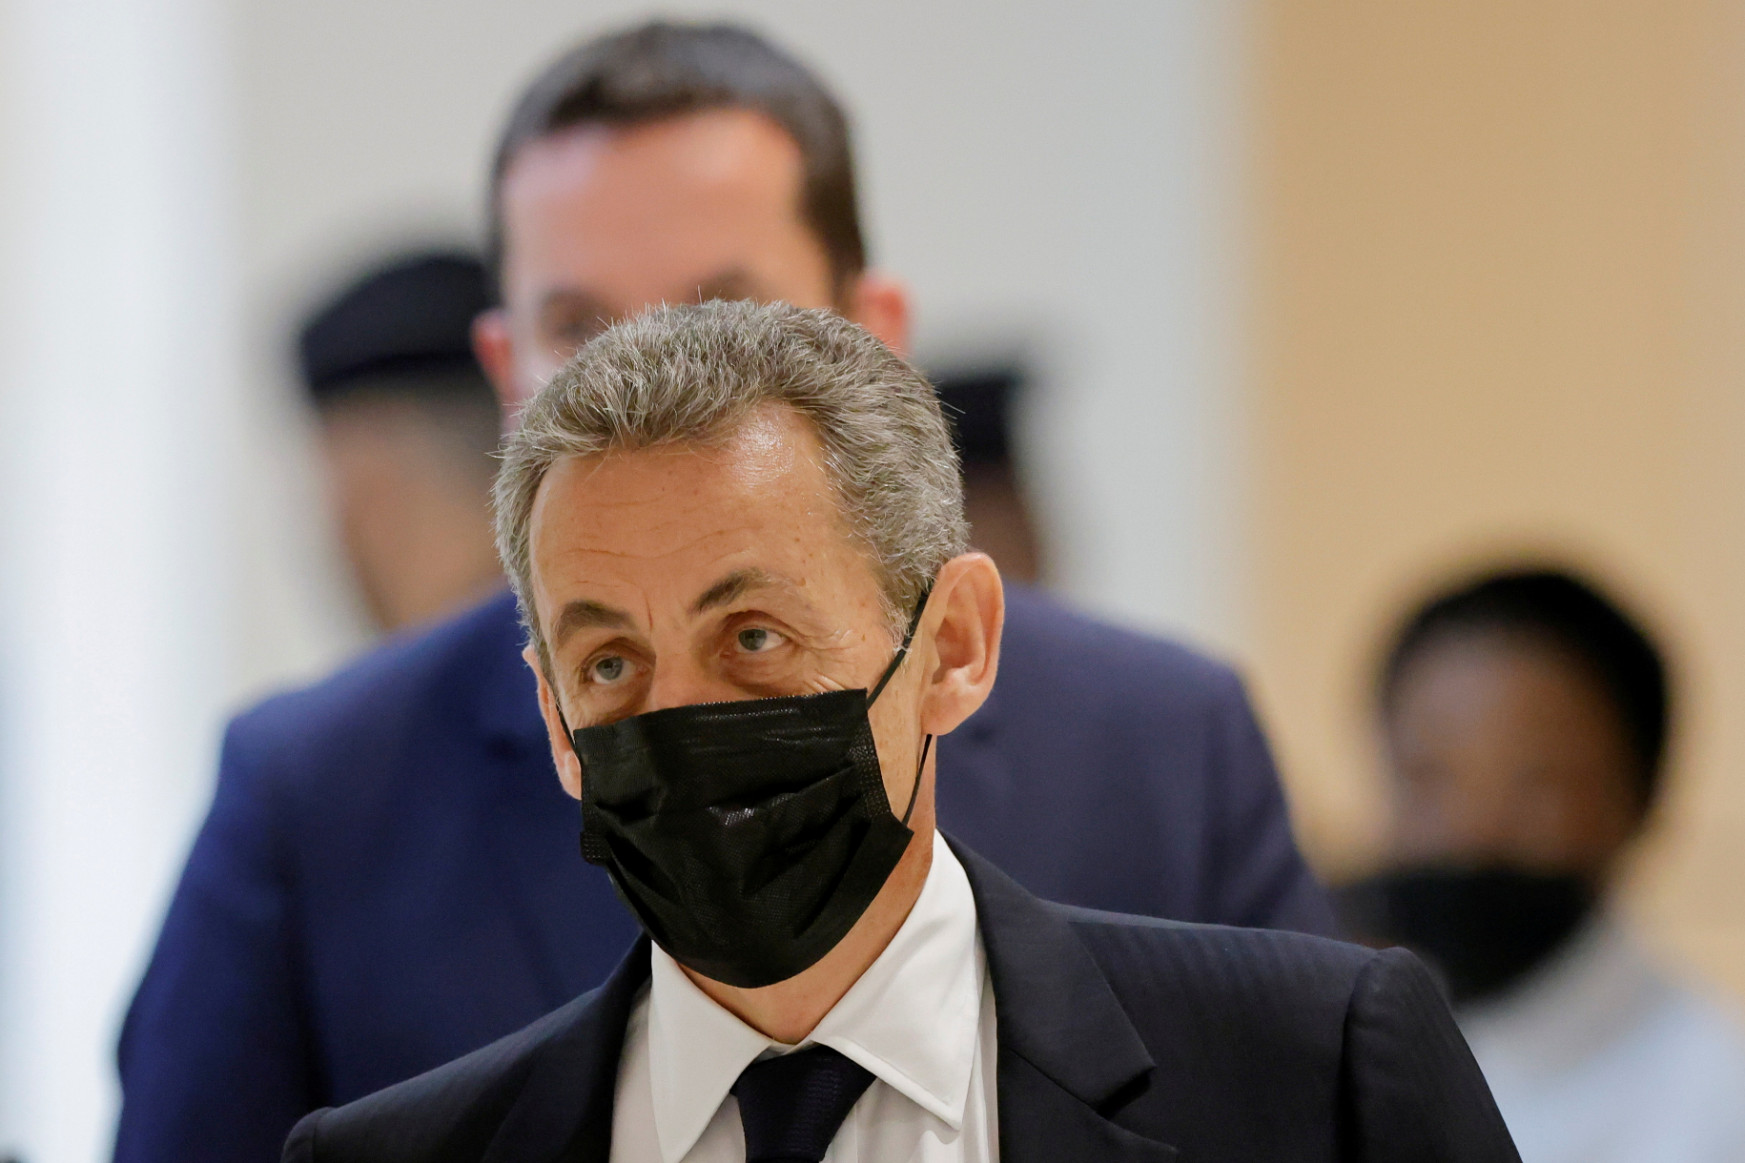 Sarkozyt törvénytelen kampányfinanszírozás ügyében is bűnösnek találták